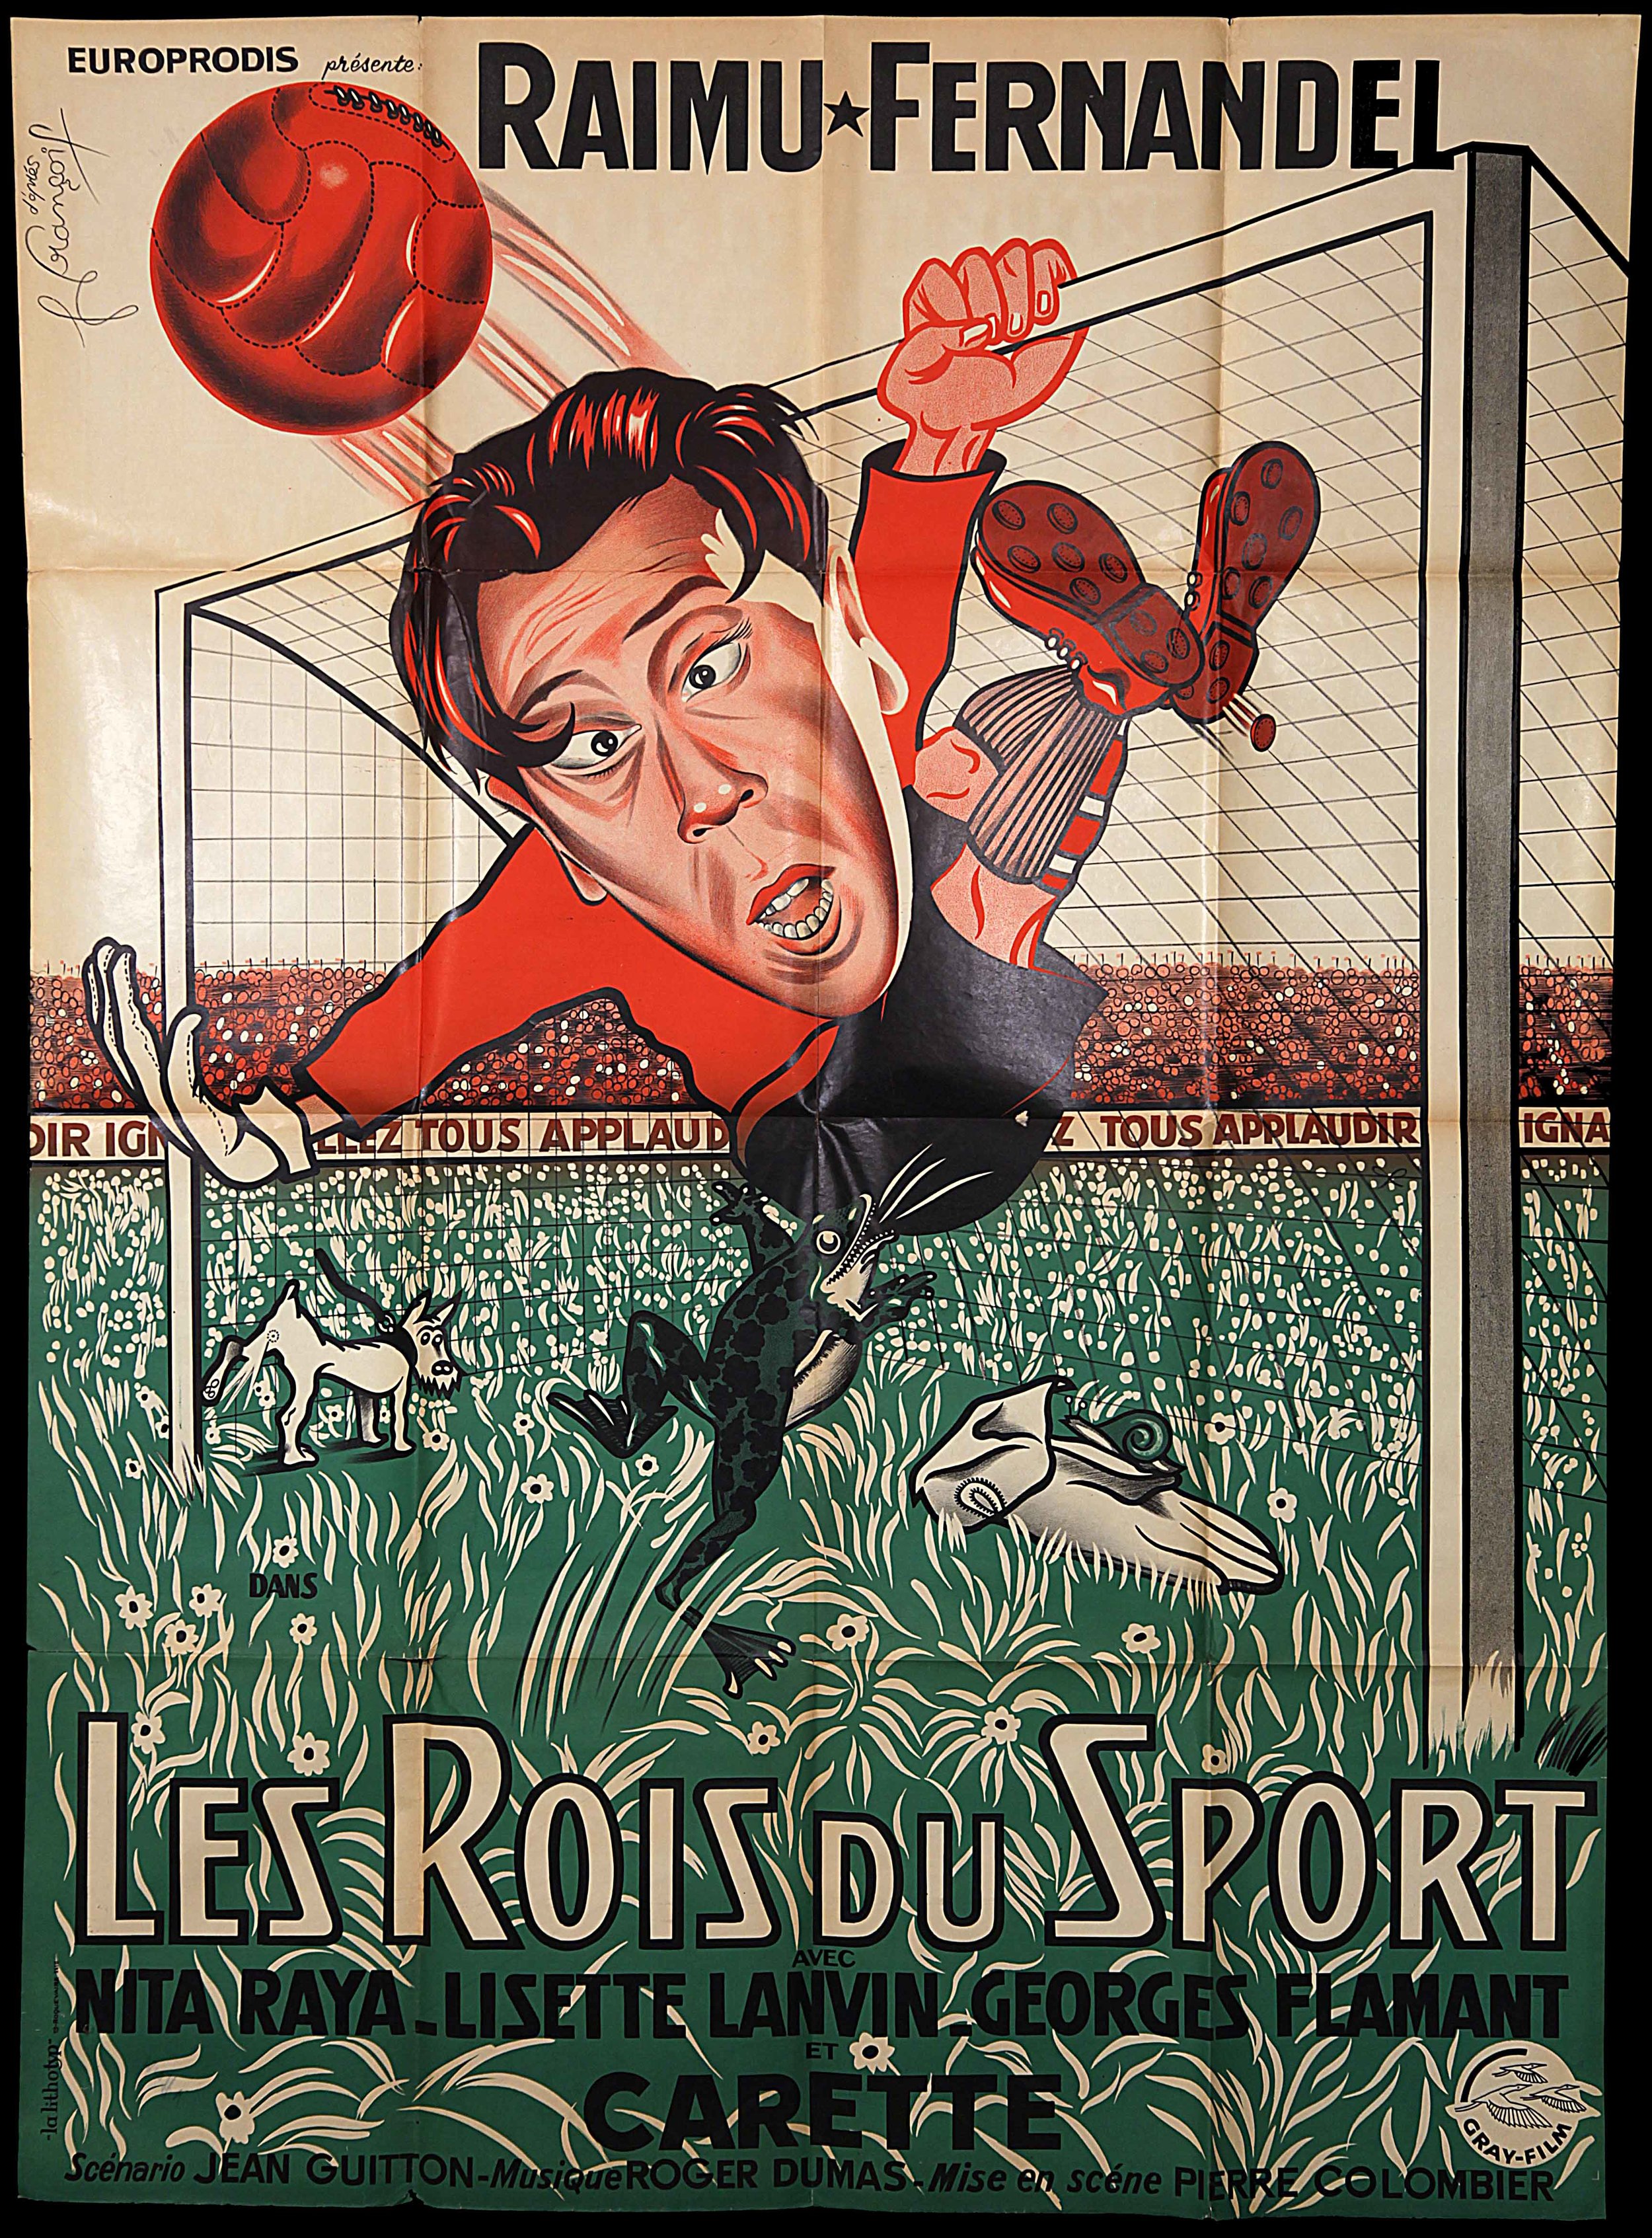 Fernadel in "Les Rois Du Sport" (1937)